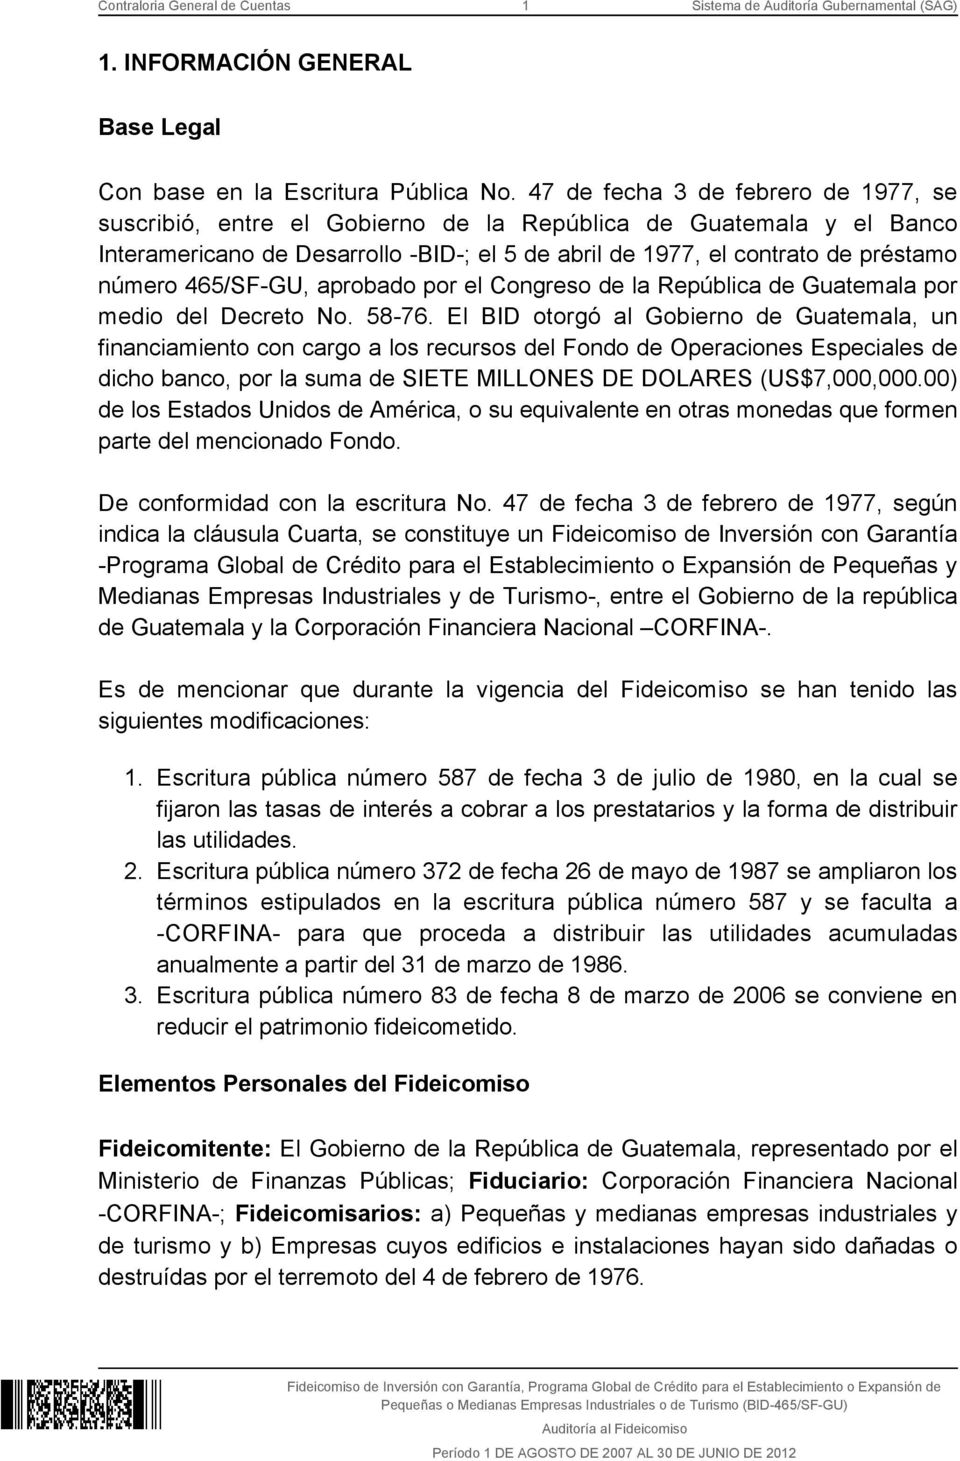 465/SF-GU, aprobado por el Congreso de la República de Guatemala por medio del Decreto No. 58-76.